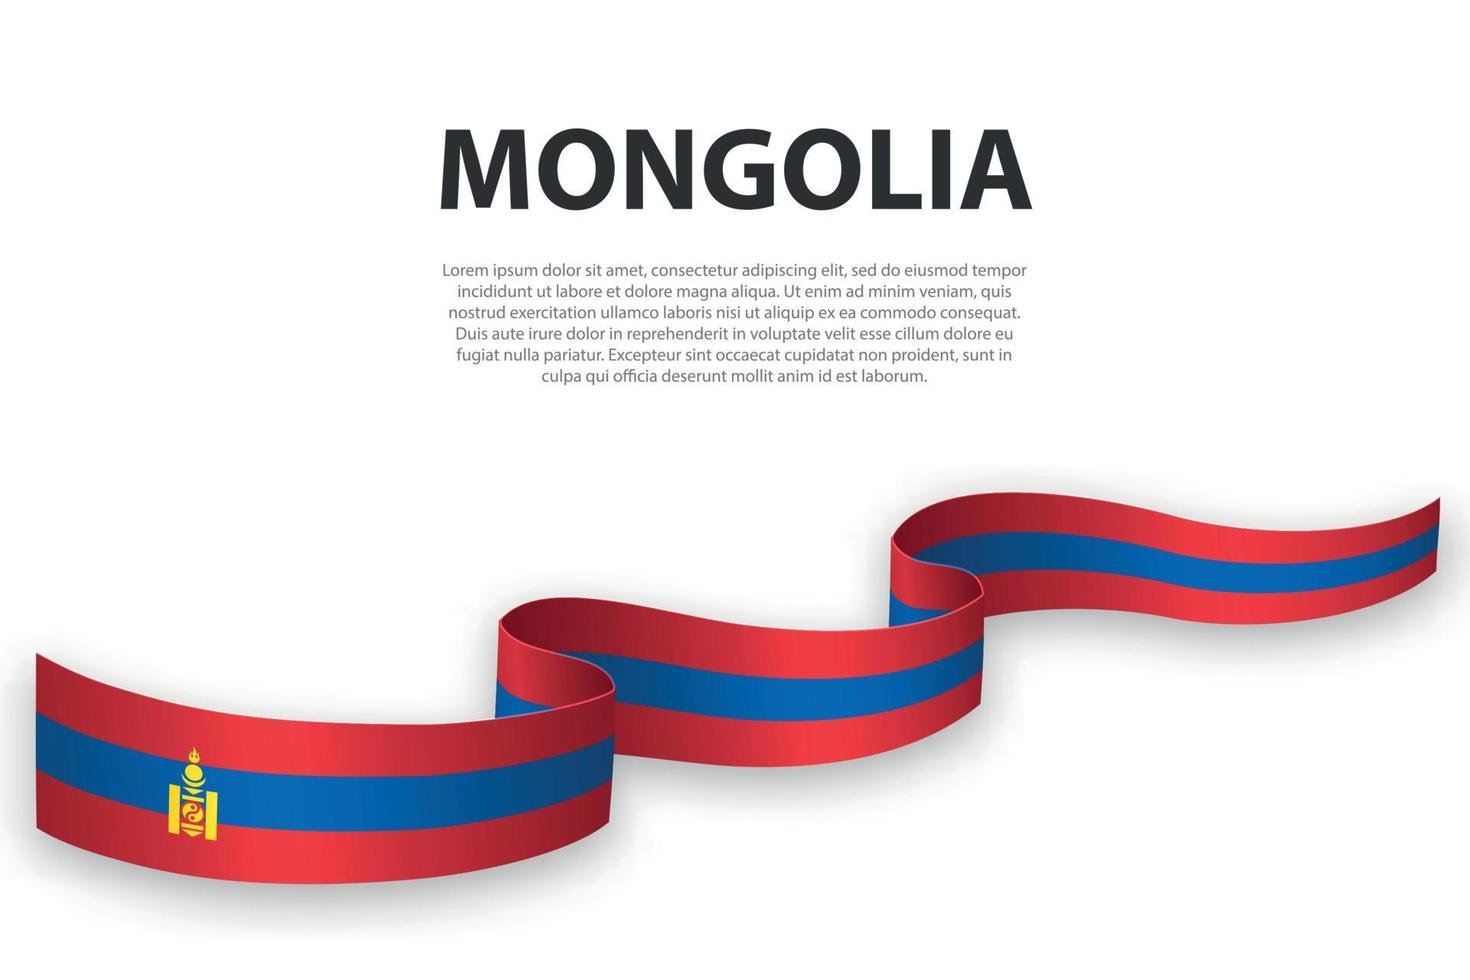 sventolando il nastro o lo striscione con la bandiera della Mongolia vettore